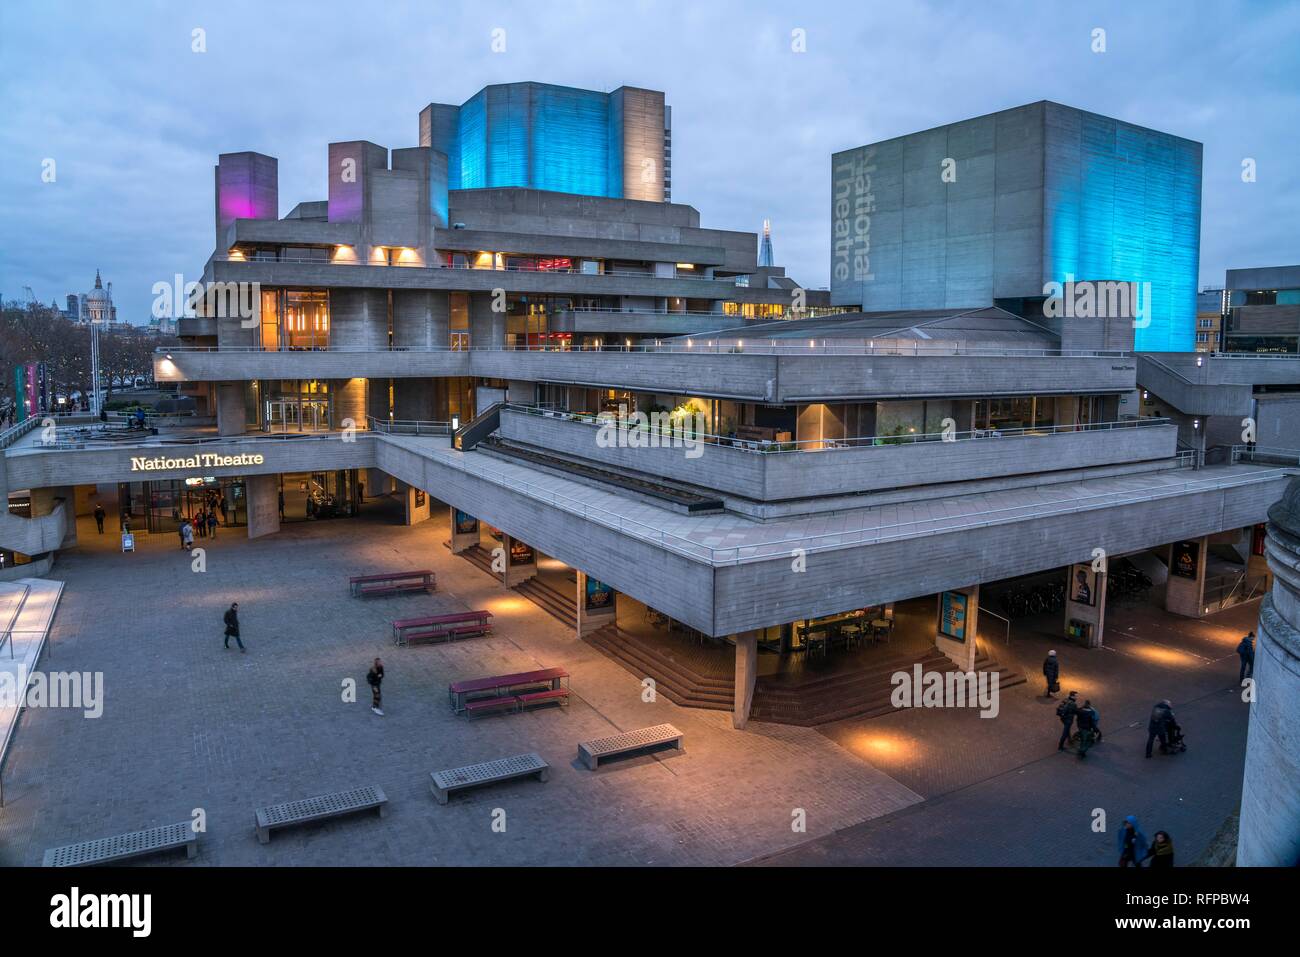 Teatro Nacional al anochecer, Londres, Gran Bretaña Foto de stock